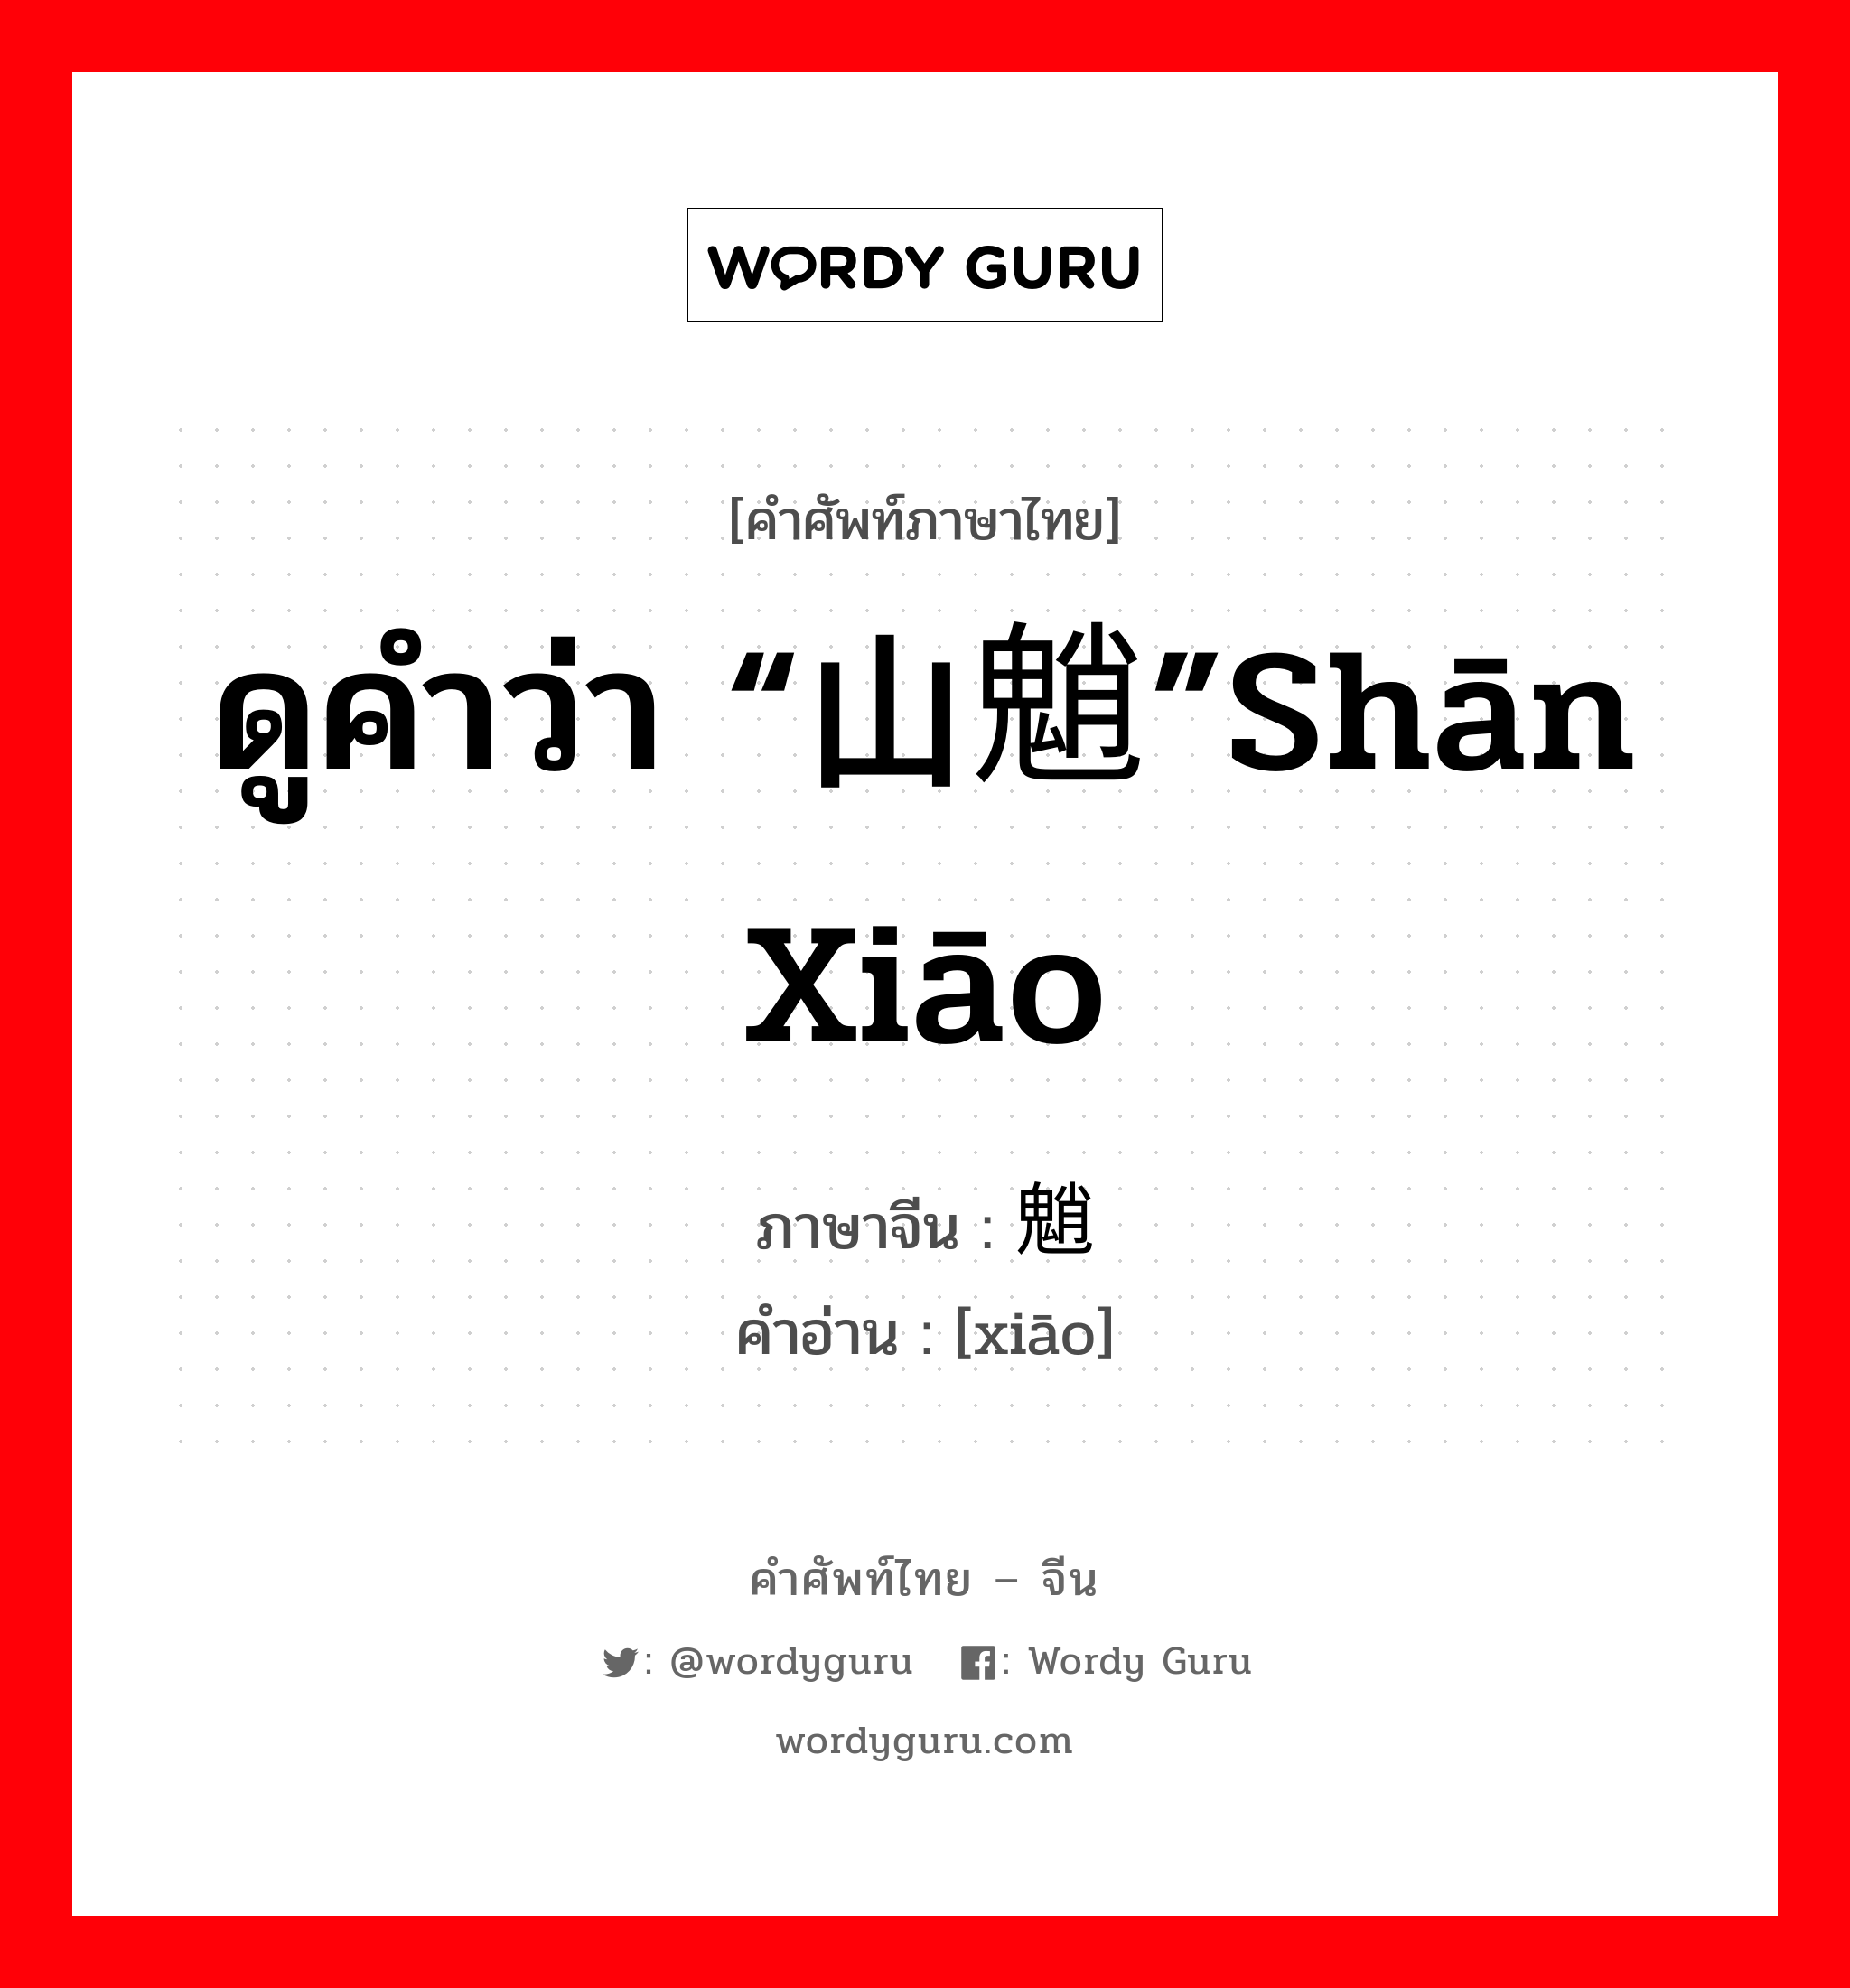 ดูคำว่า “山魈”shān xiāo ภาษาจีนคืออะไร, คำศัพท์ภาษาไทย - จีน ดูคำว่า “山魈”shān xiāo ภาษาจีน 魈 คำอ่าน [xiāo]